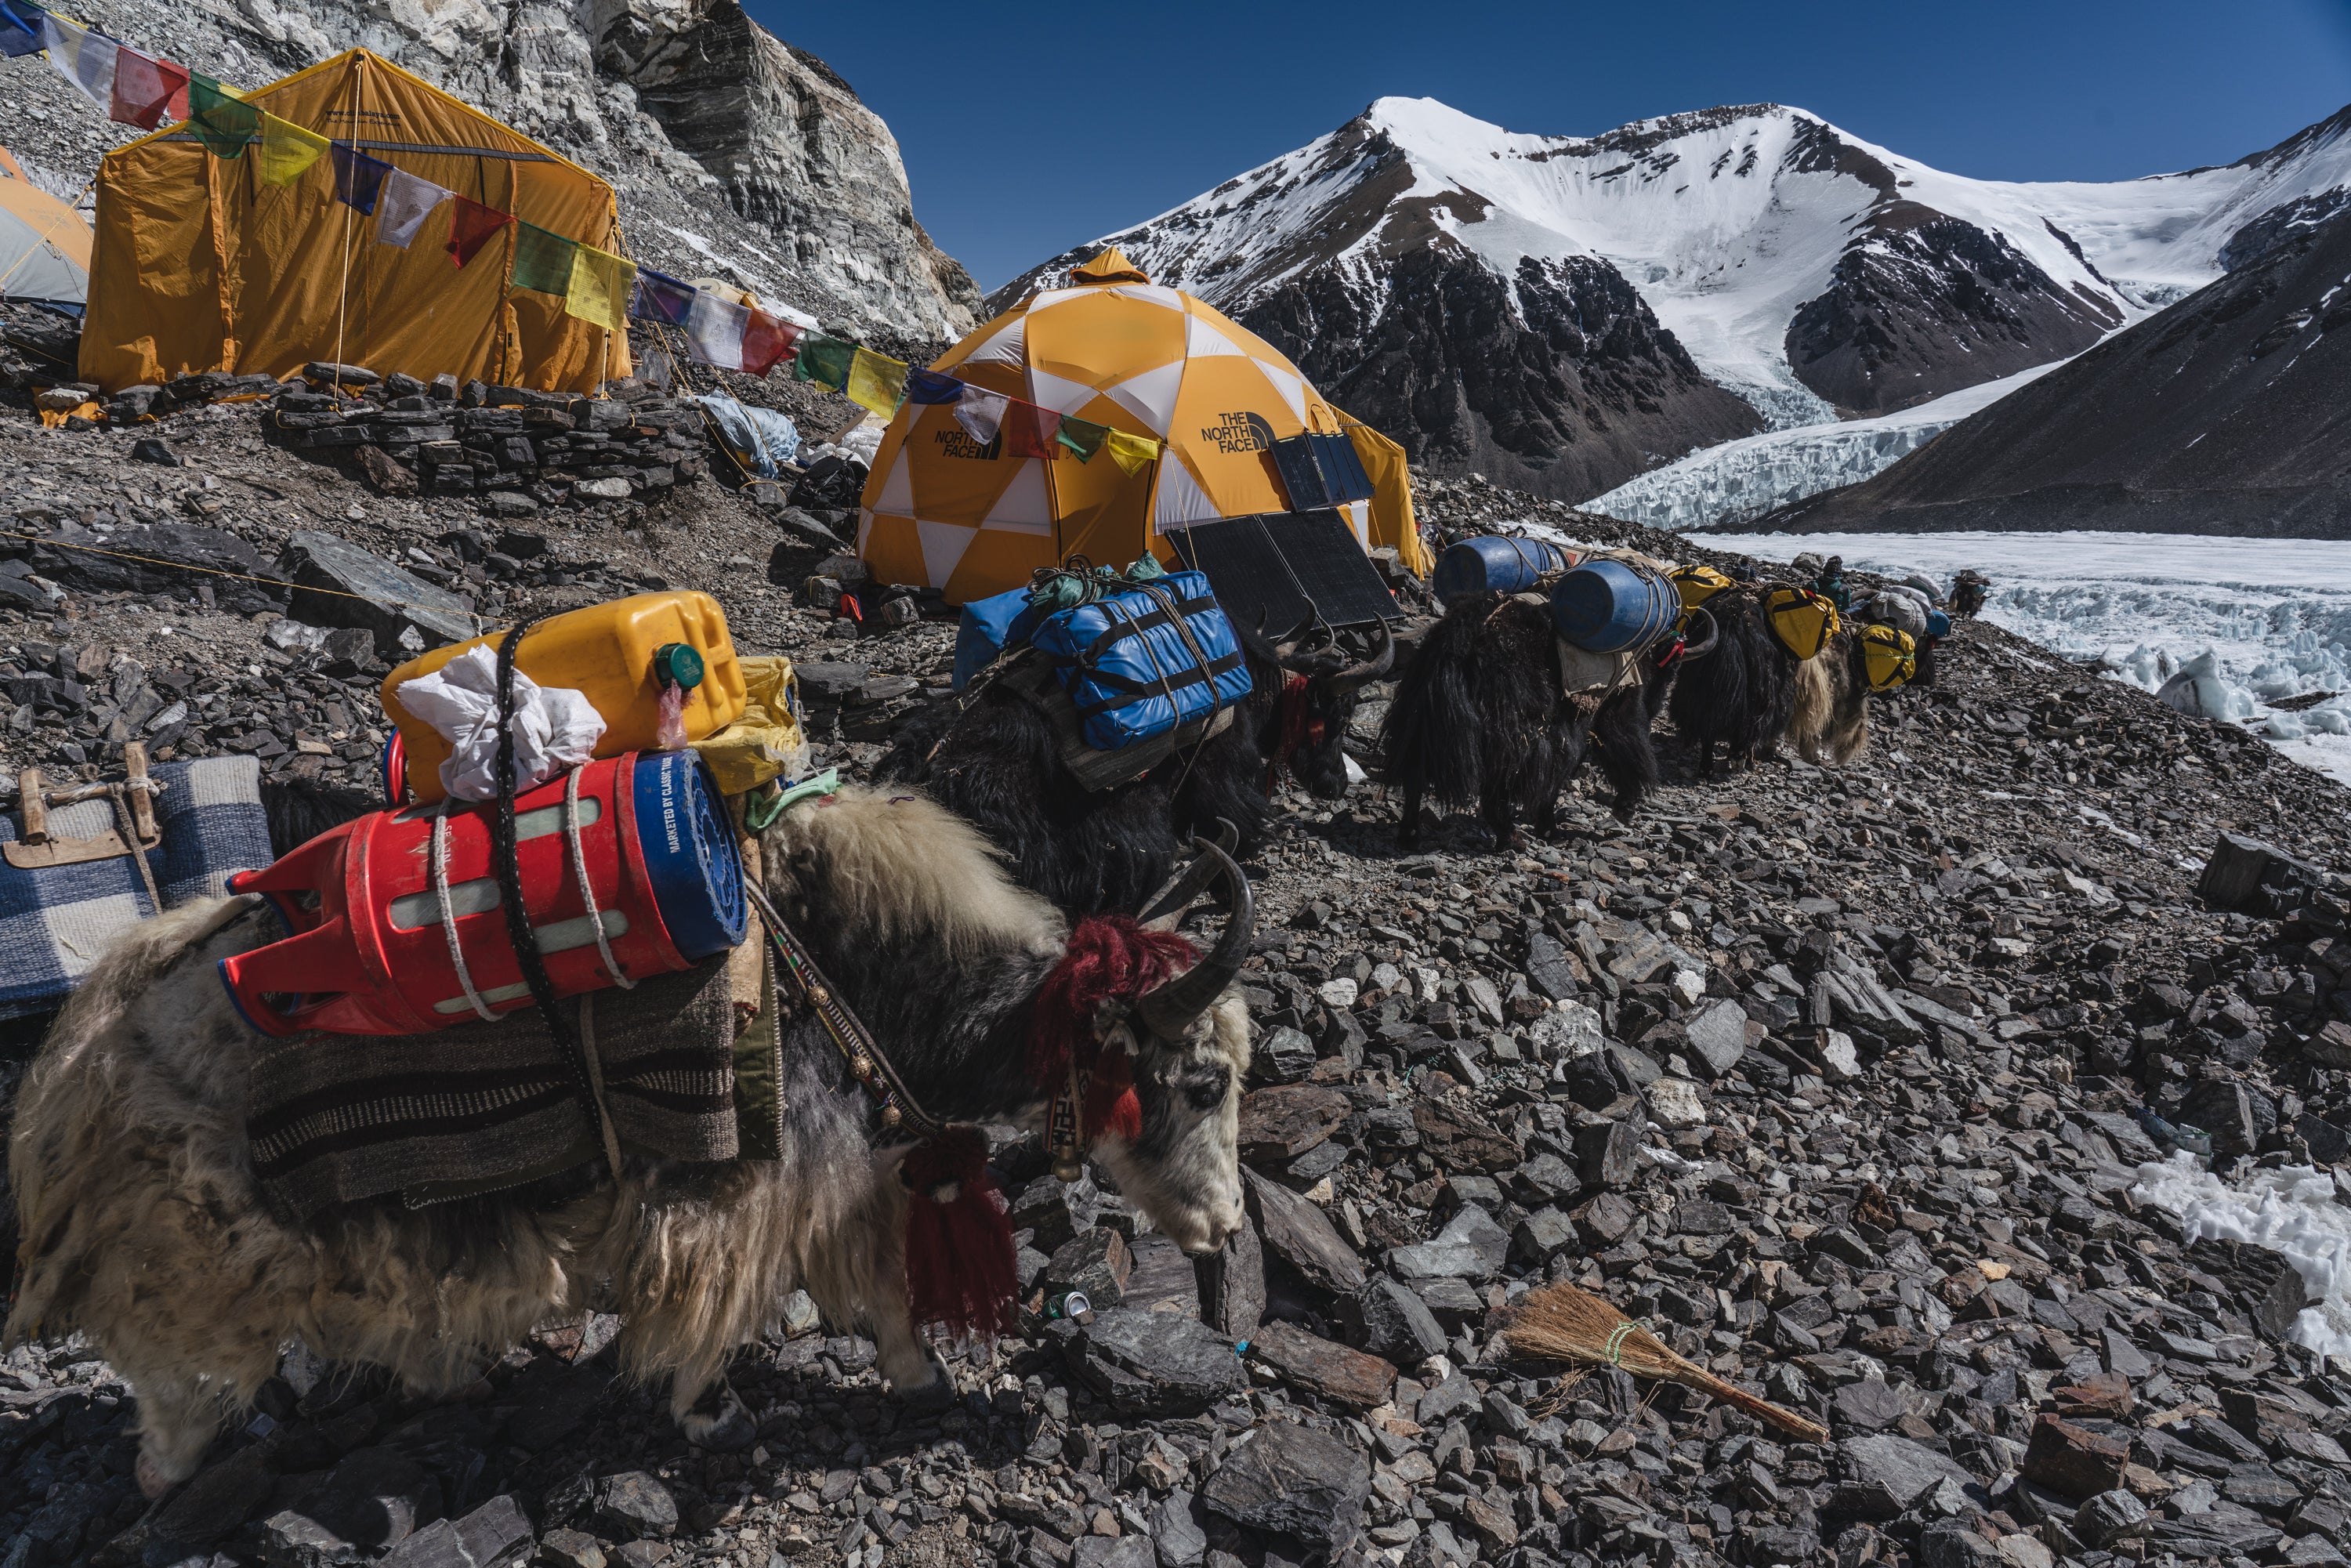 Panneaux solaires Goal Zero - Camp Everest - Renan Ozturk